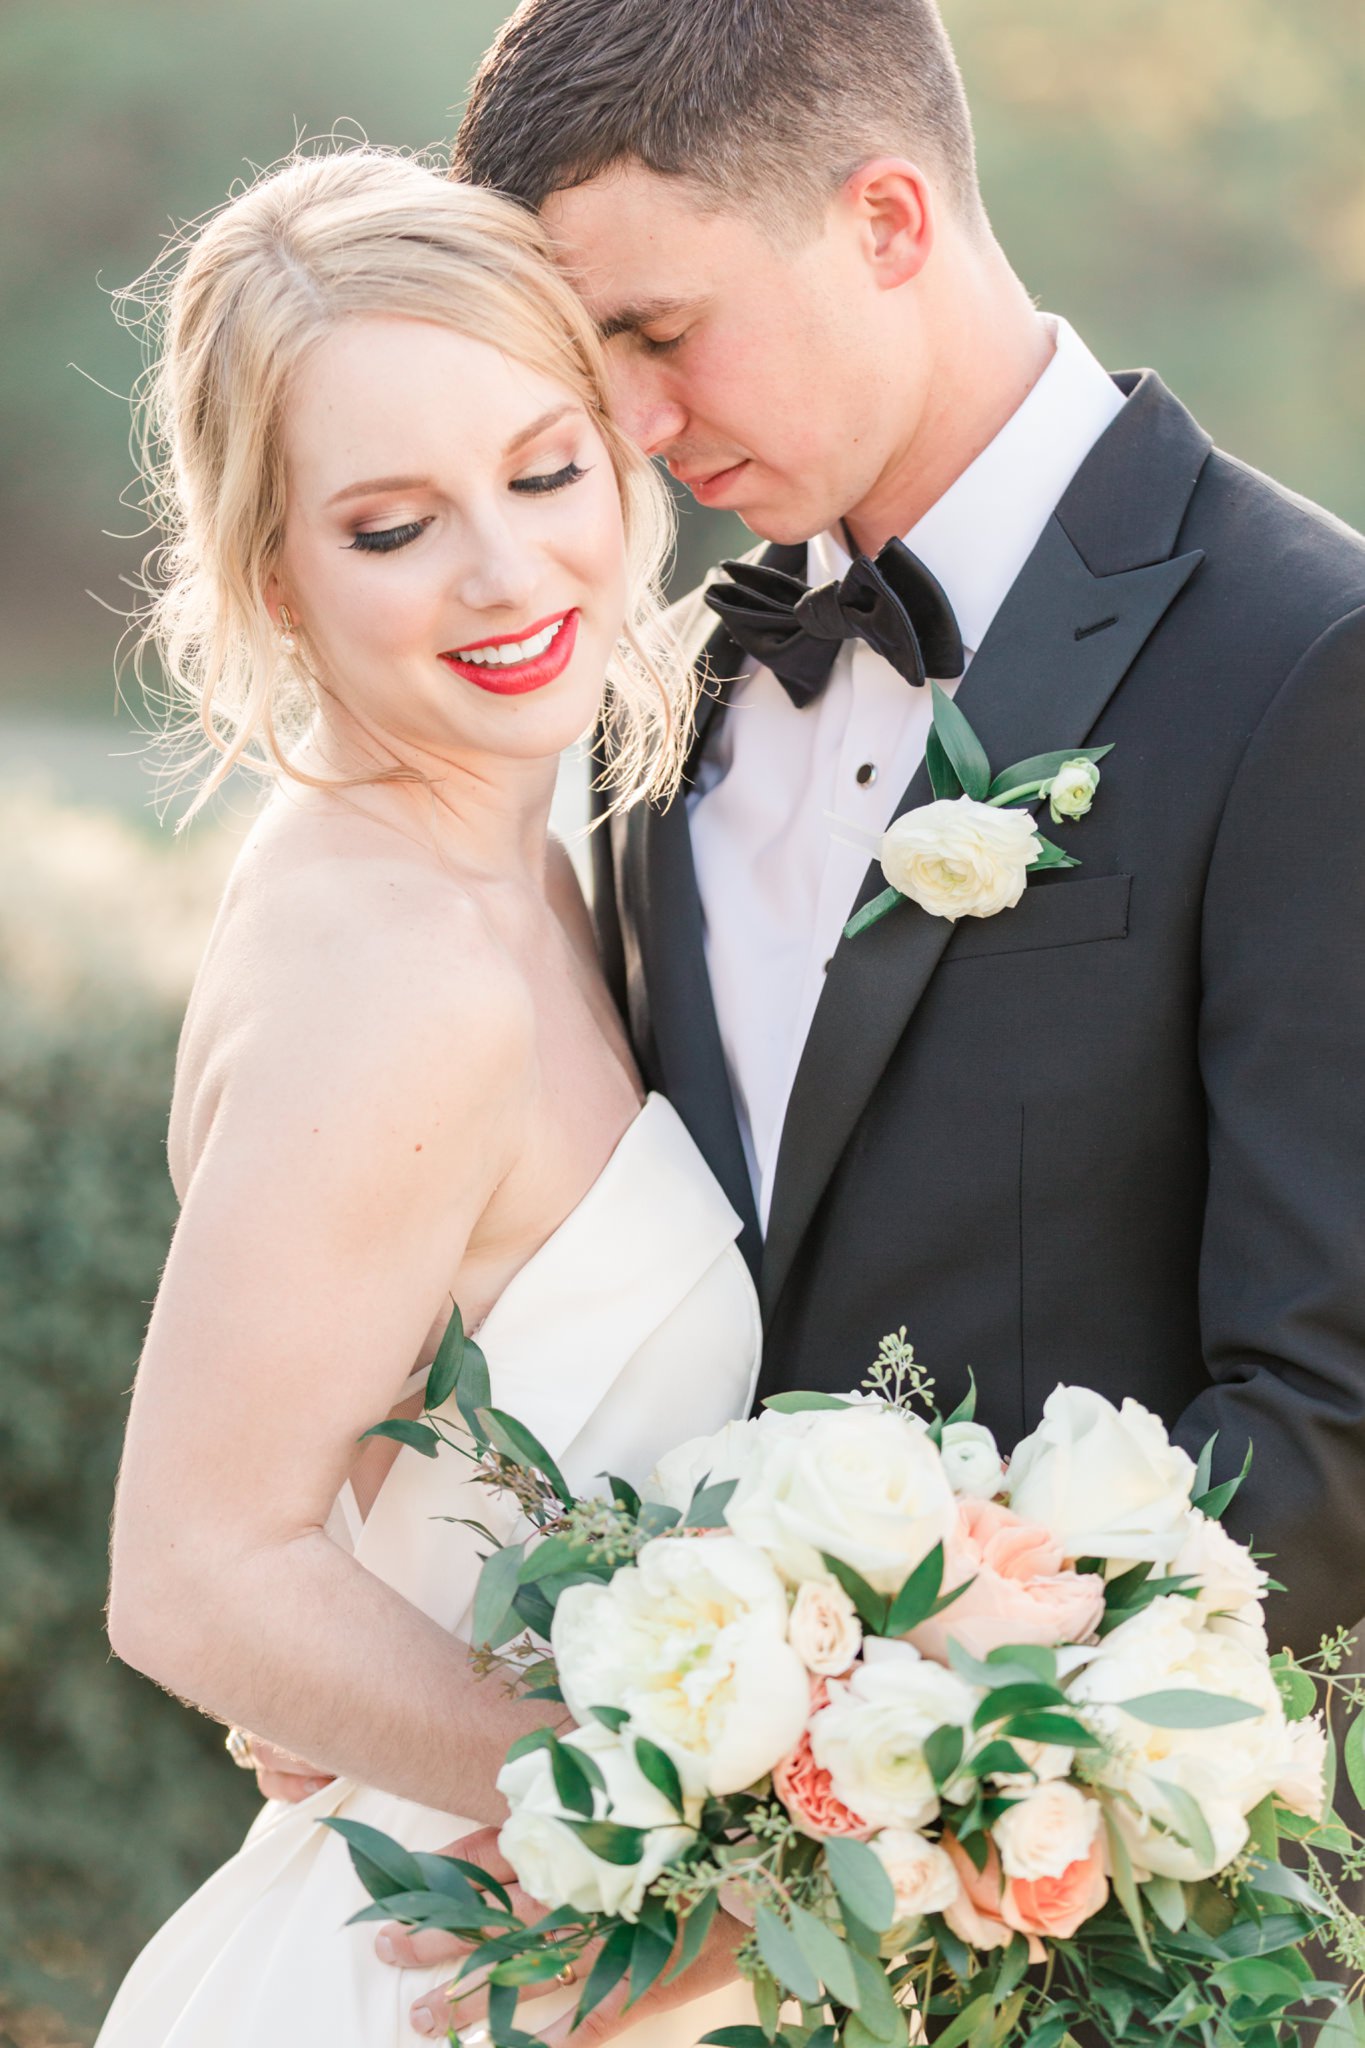 A Grey and Peach Summer Wedding at Kendall Point in Boerne, TX by Dawn Elizabeth Studios, San Antonio Wedding Photographer